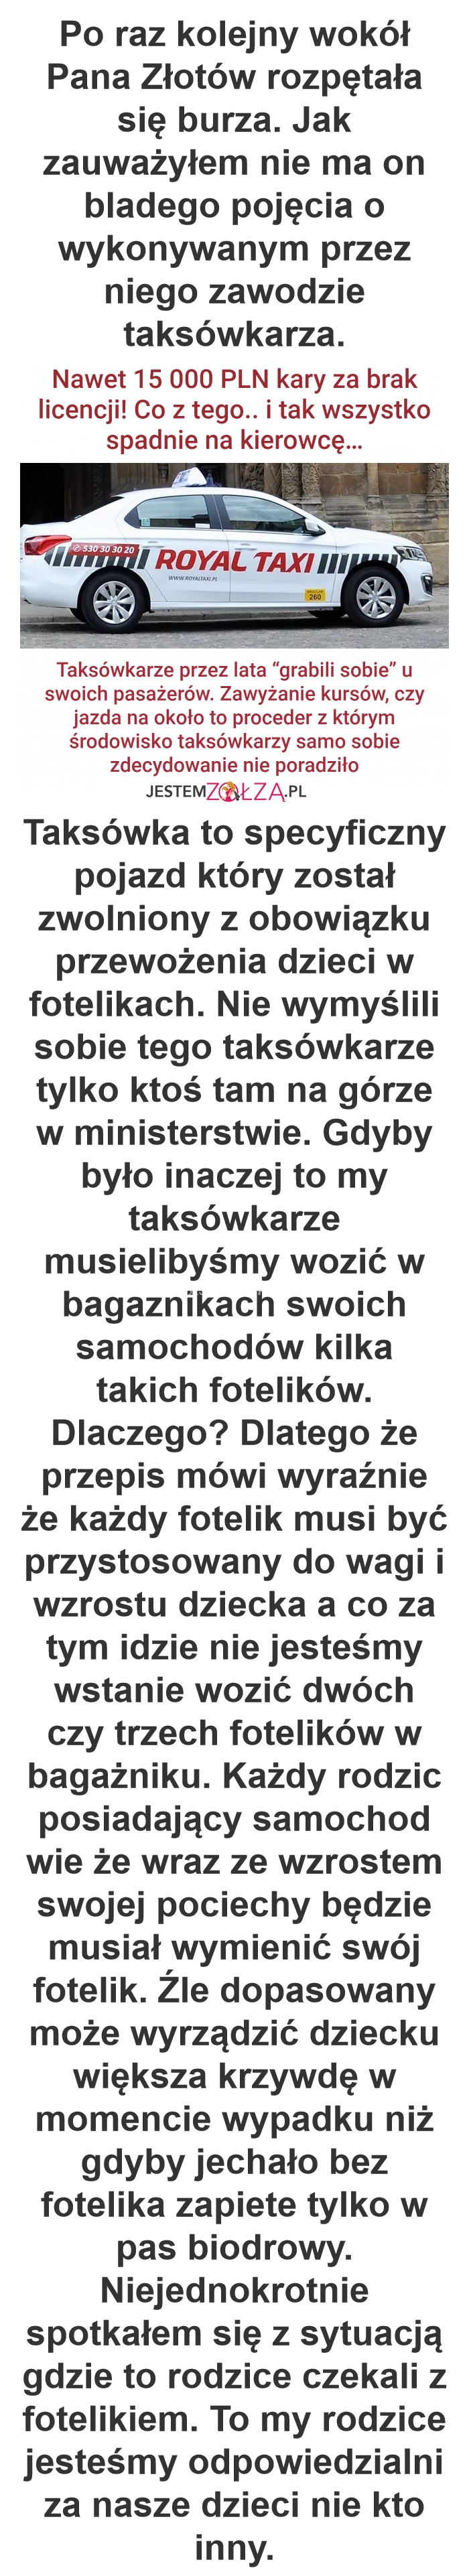 TAXI Wrocław usługa niewykonana : Co za debil.